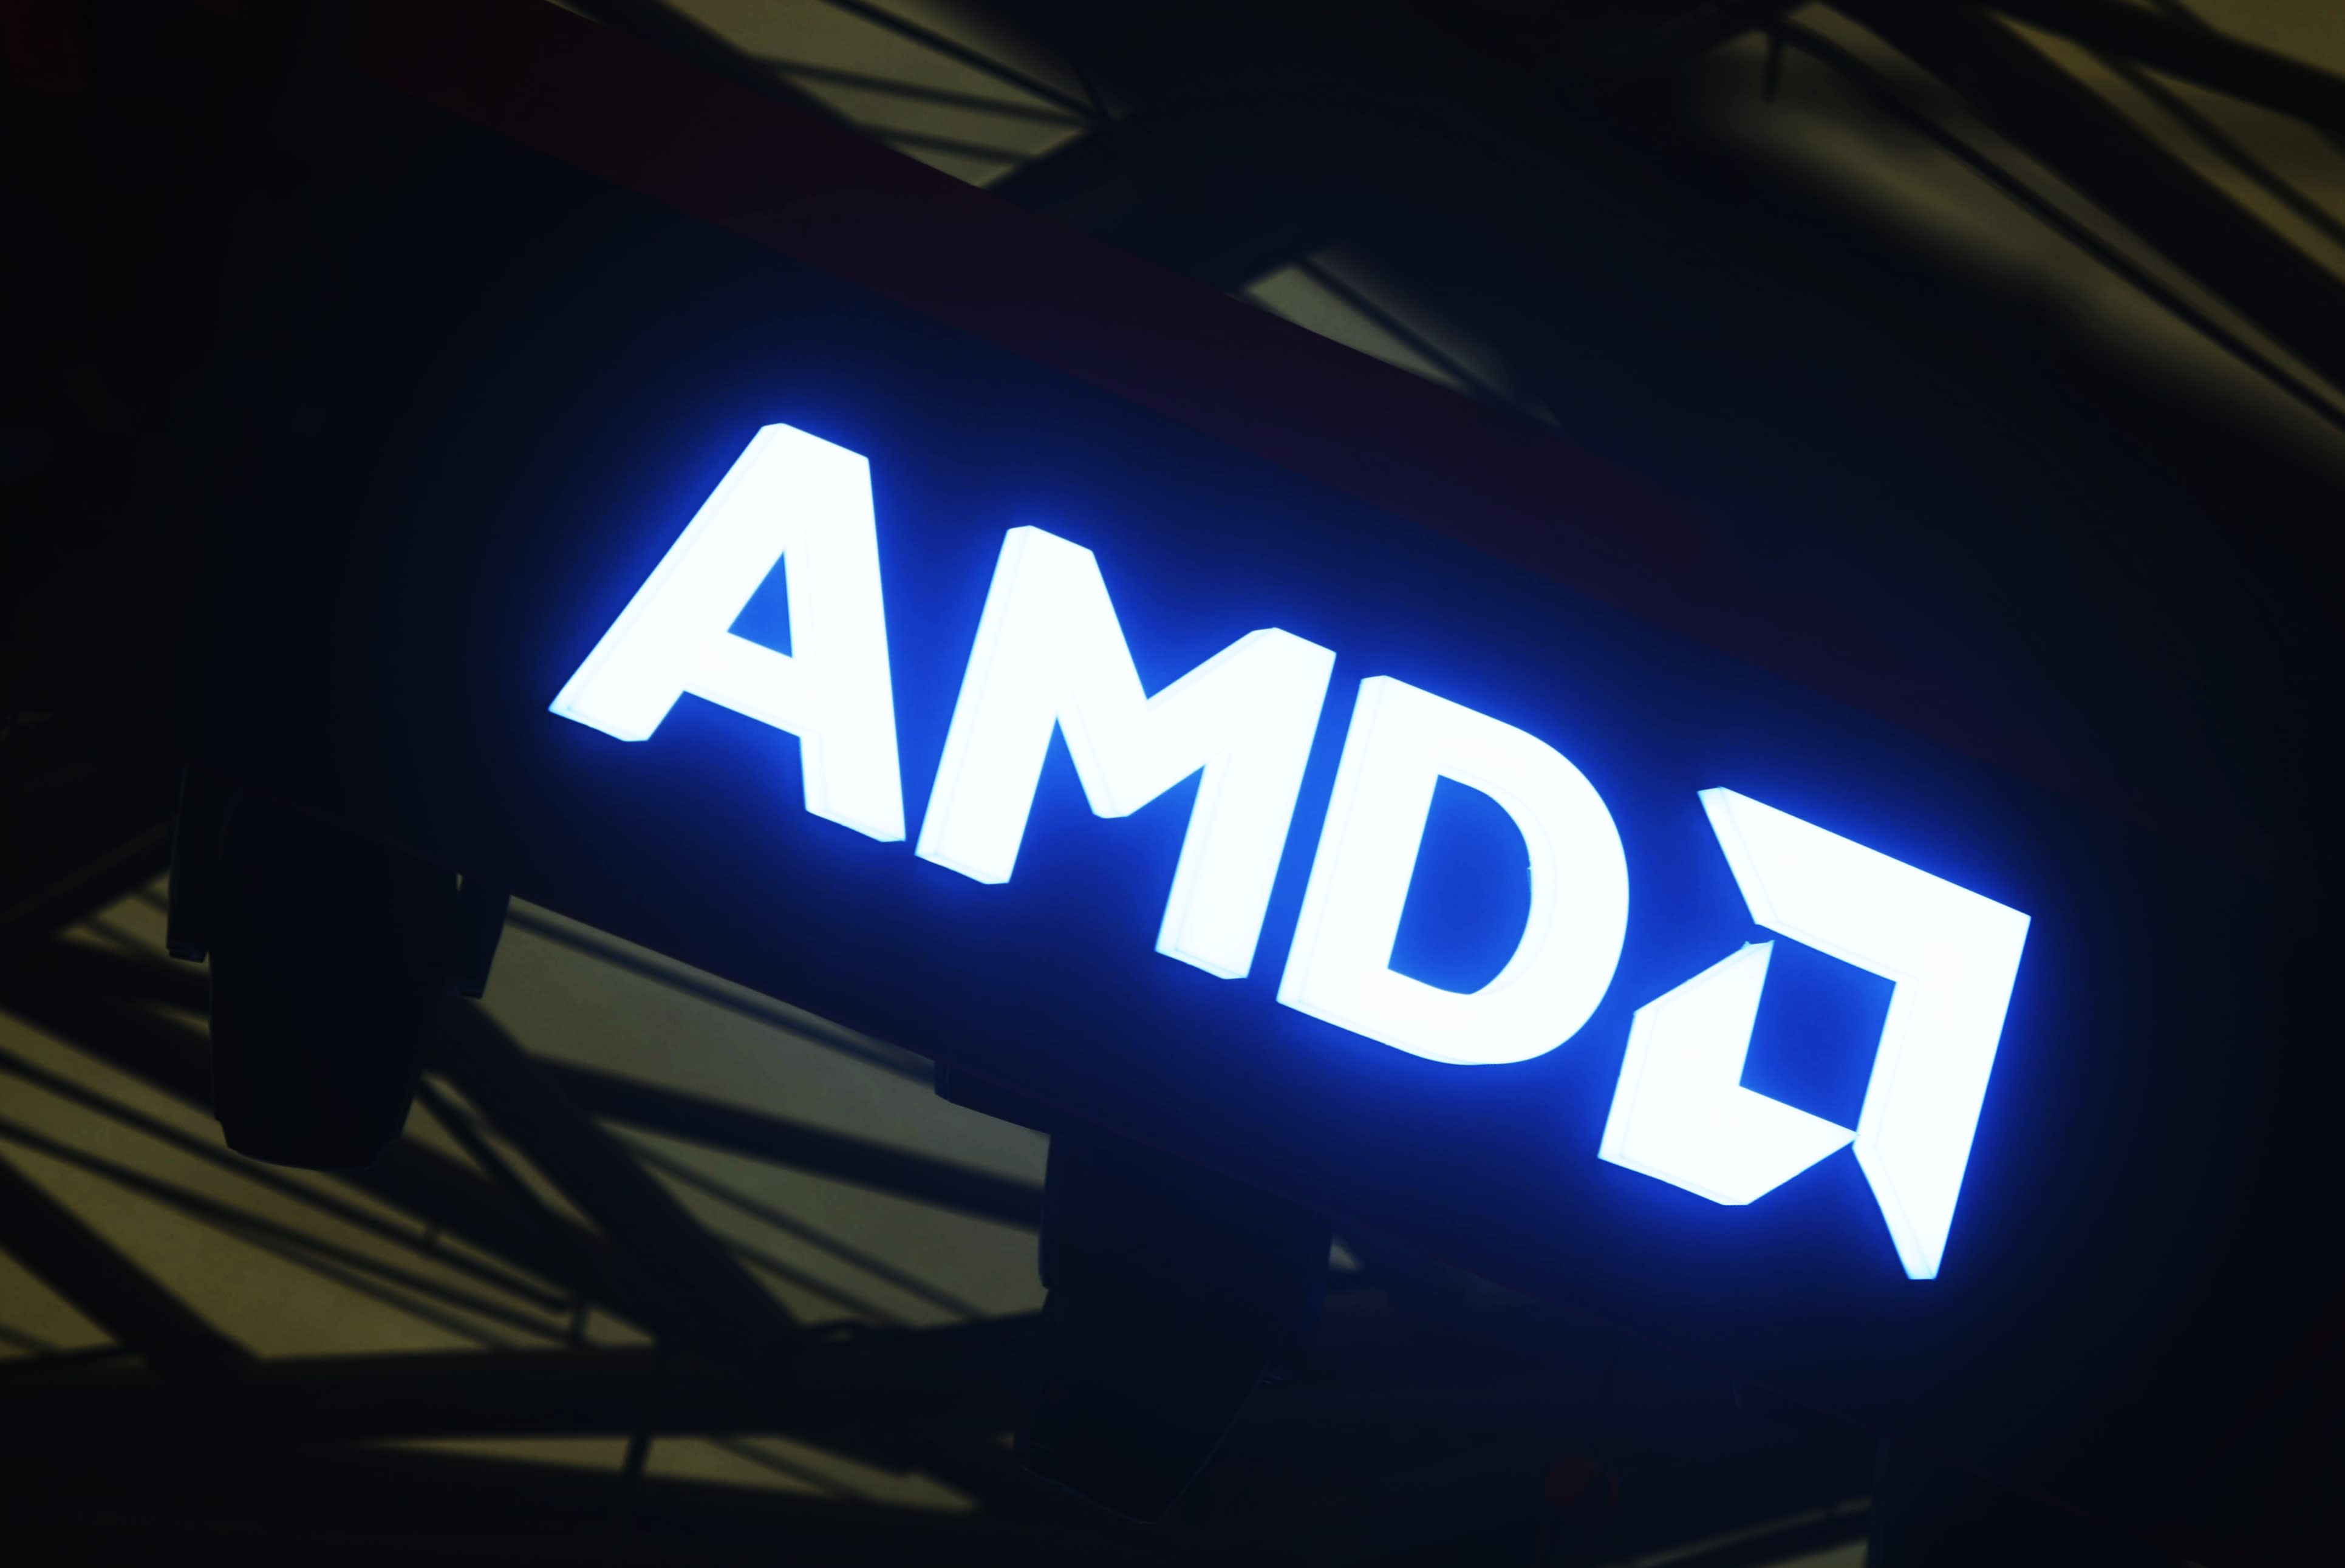 AMD apuesta por las PC con tecnología de inteligencia artificial a medida que se intensifica la carrera tecnológica con Nvidia e Intel